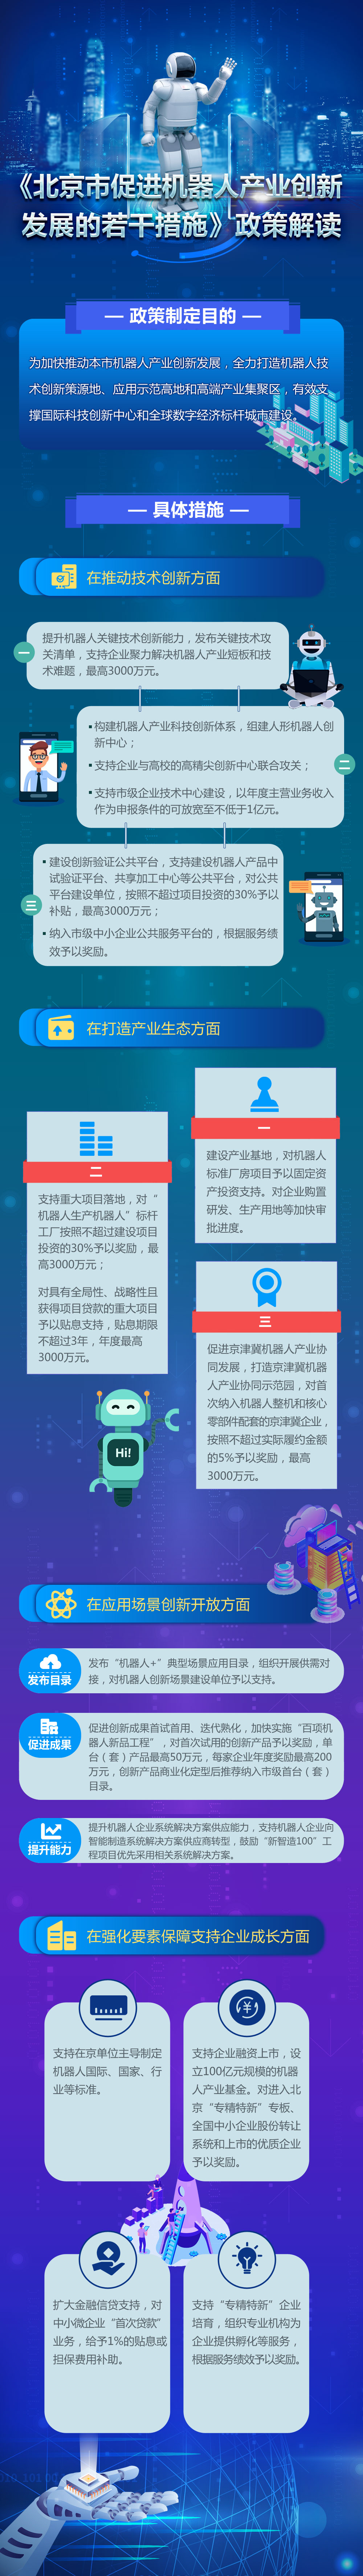 《北京市促进机器人产业创新发展的若干措施》政策解读1.jpg